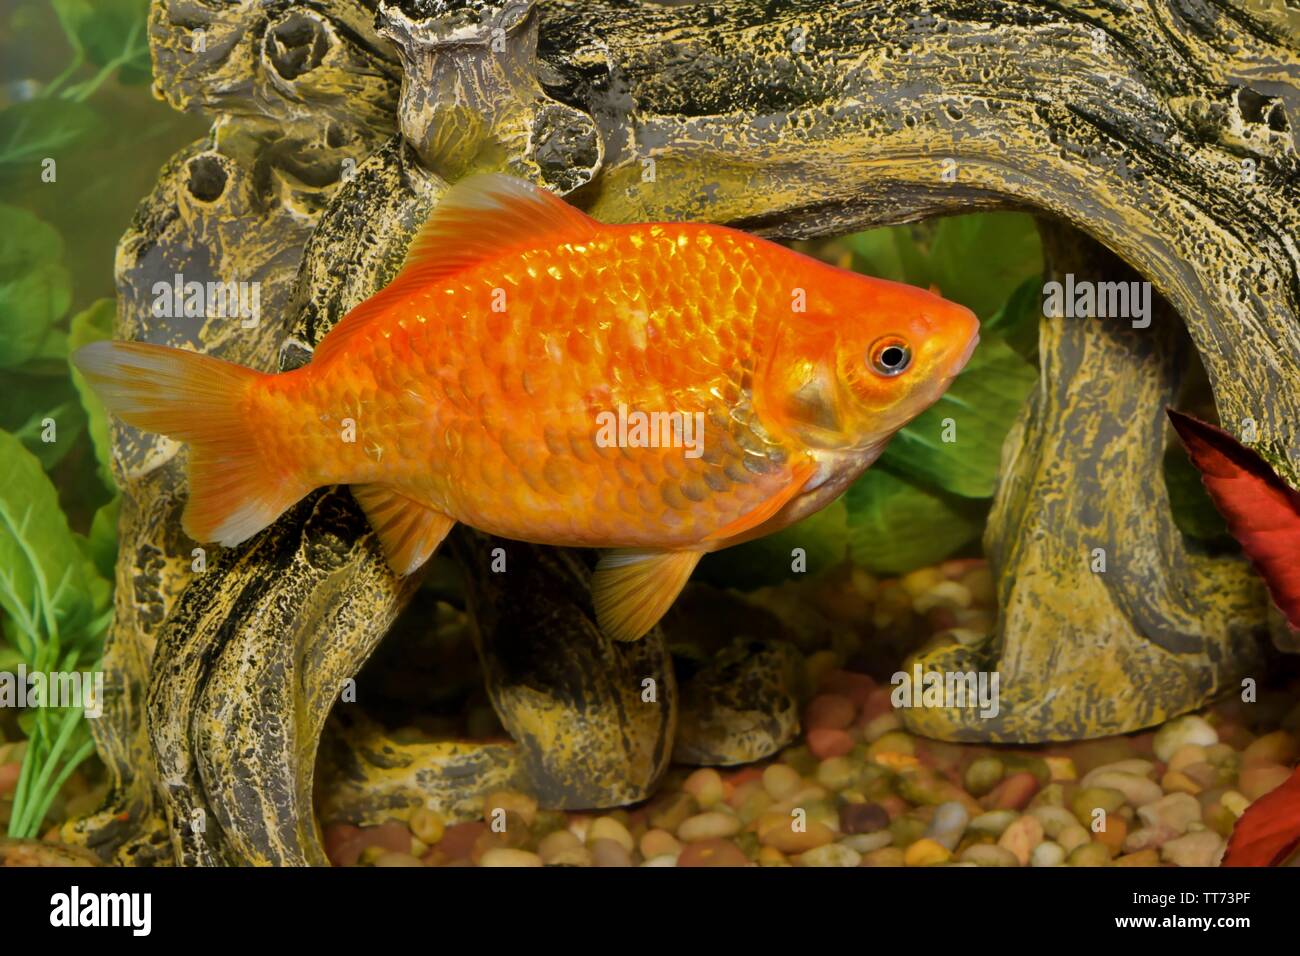 L'orange vif Koi le carassin (Carassius auratus) piscine dans un réservoir d'aquarium décoré. Banque D'Images